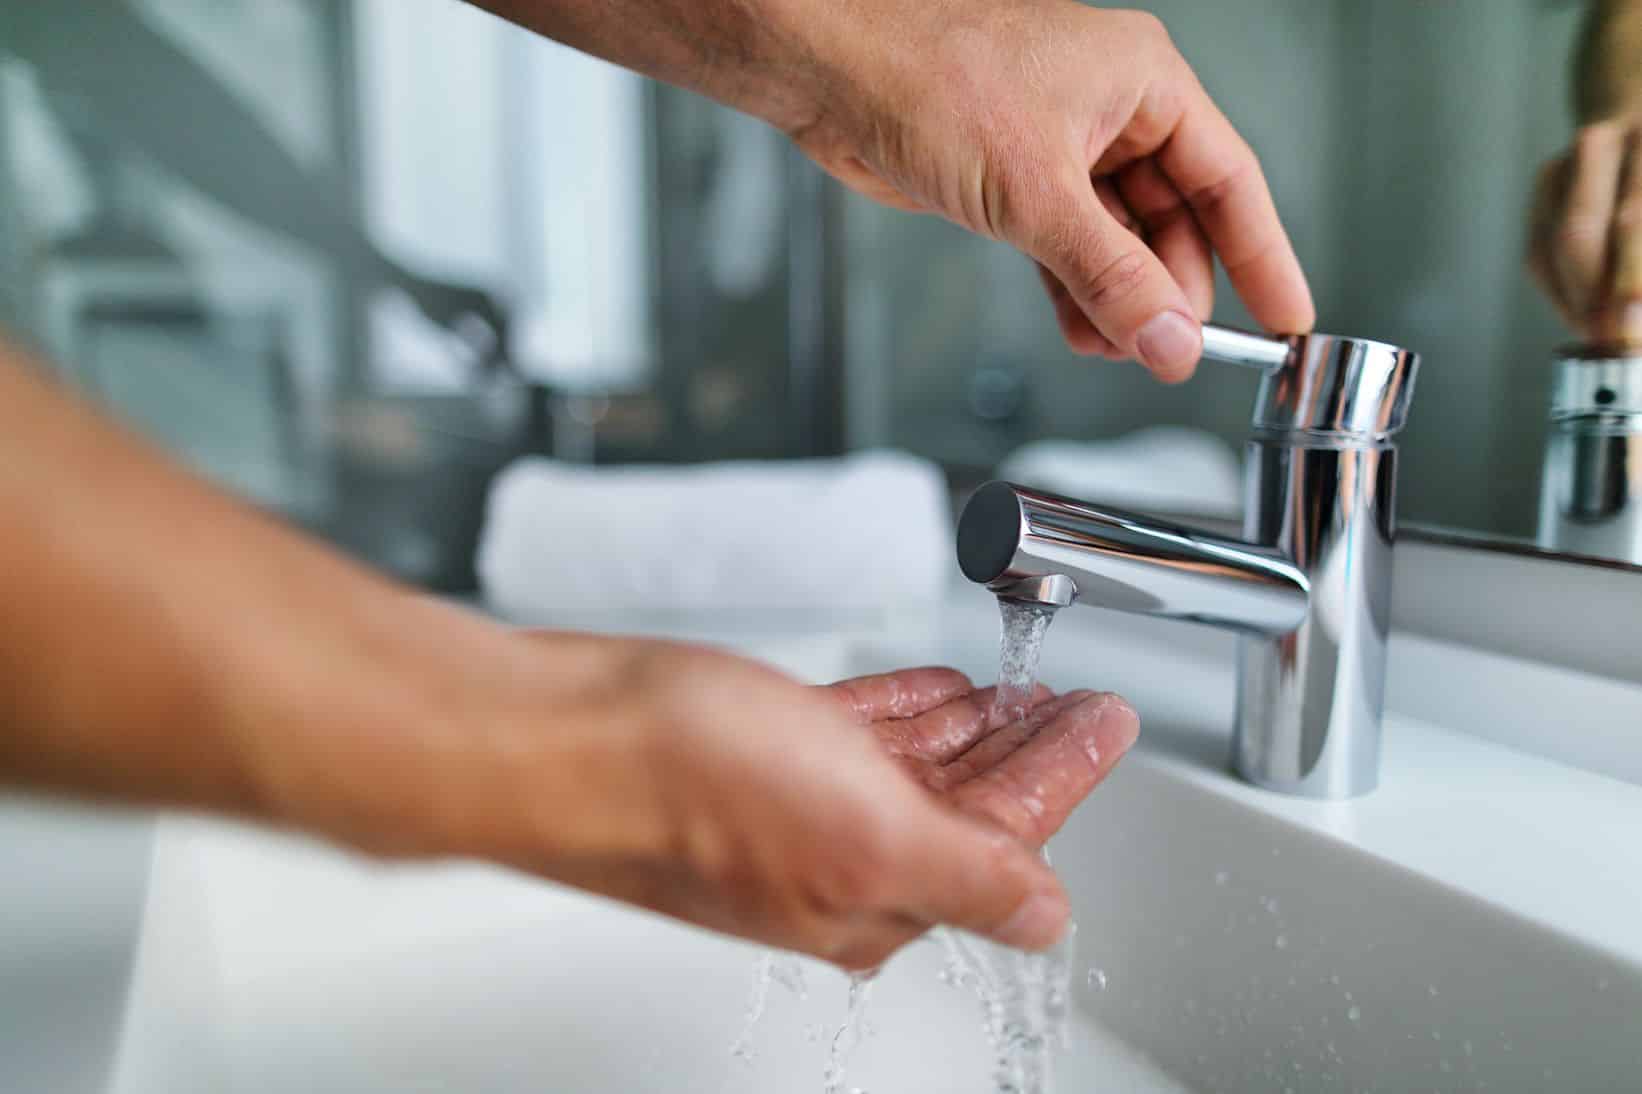 low_water_pressure_on_bathroom_faucet.jpeg